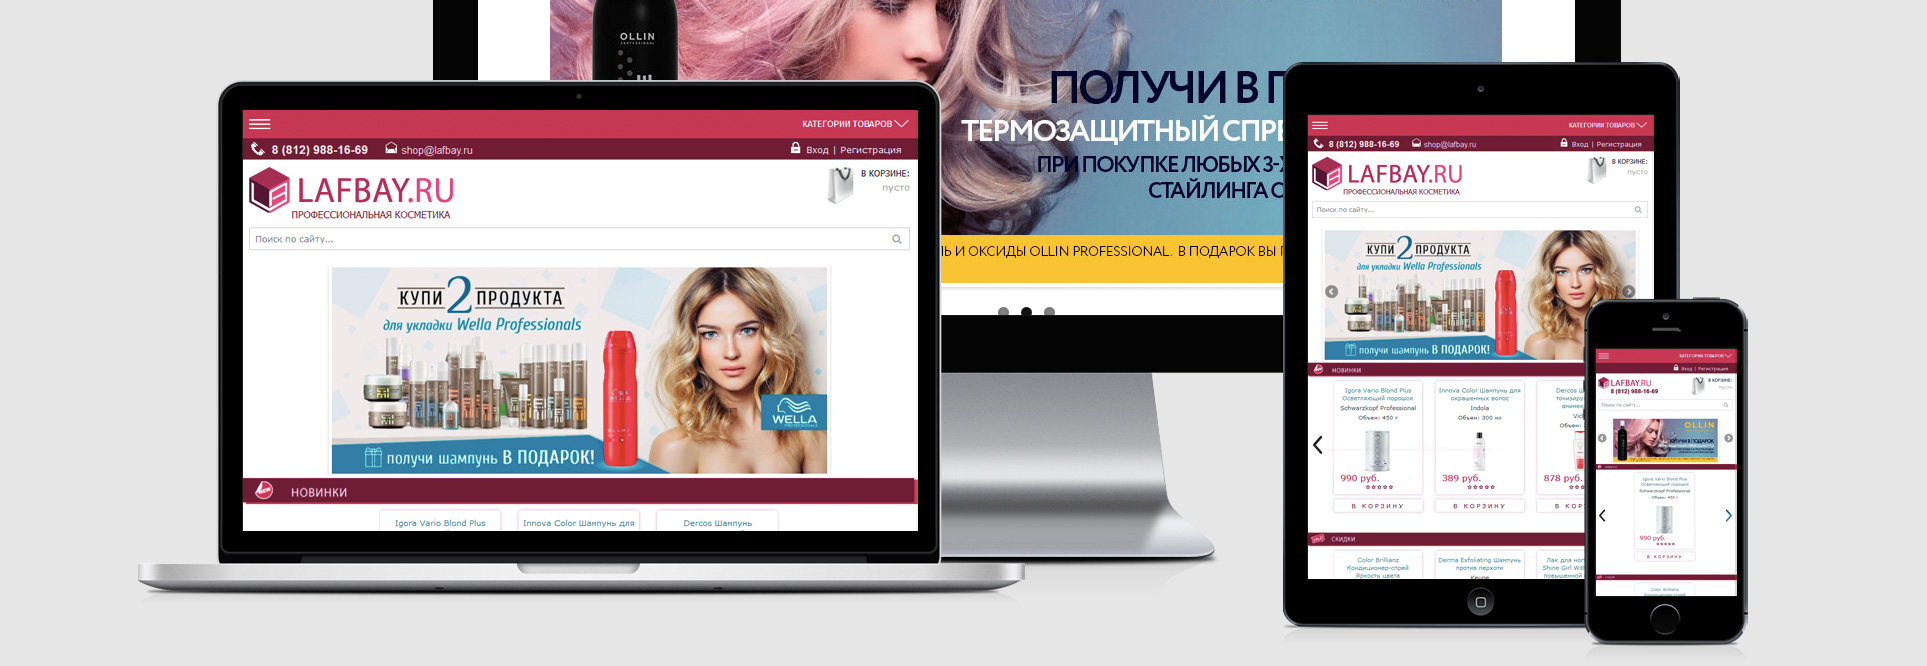 Интернет-магазин профессиональной косметики "Lafbay.ru"